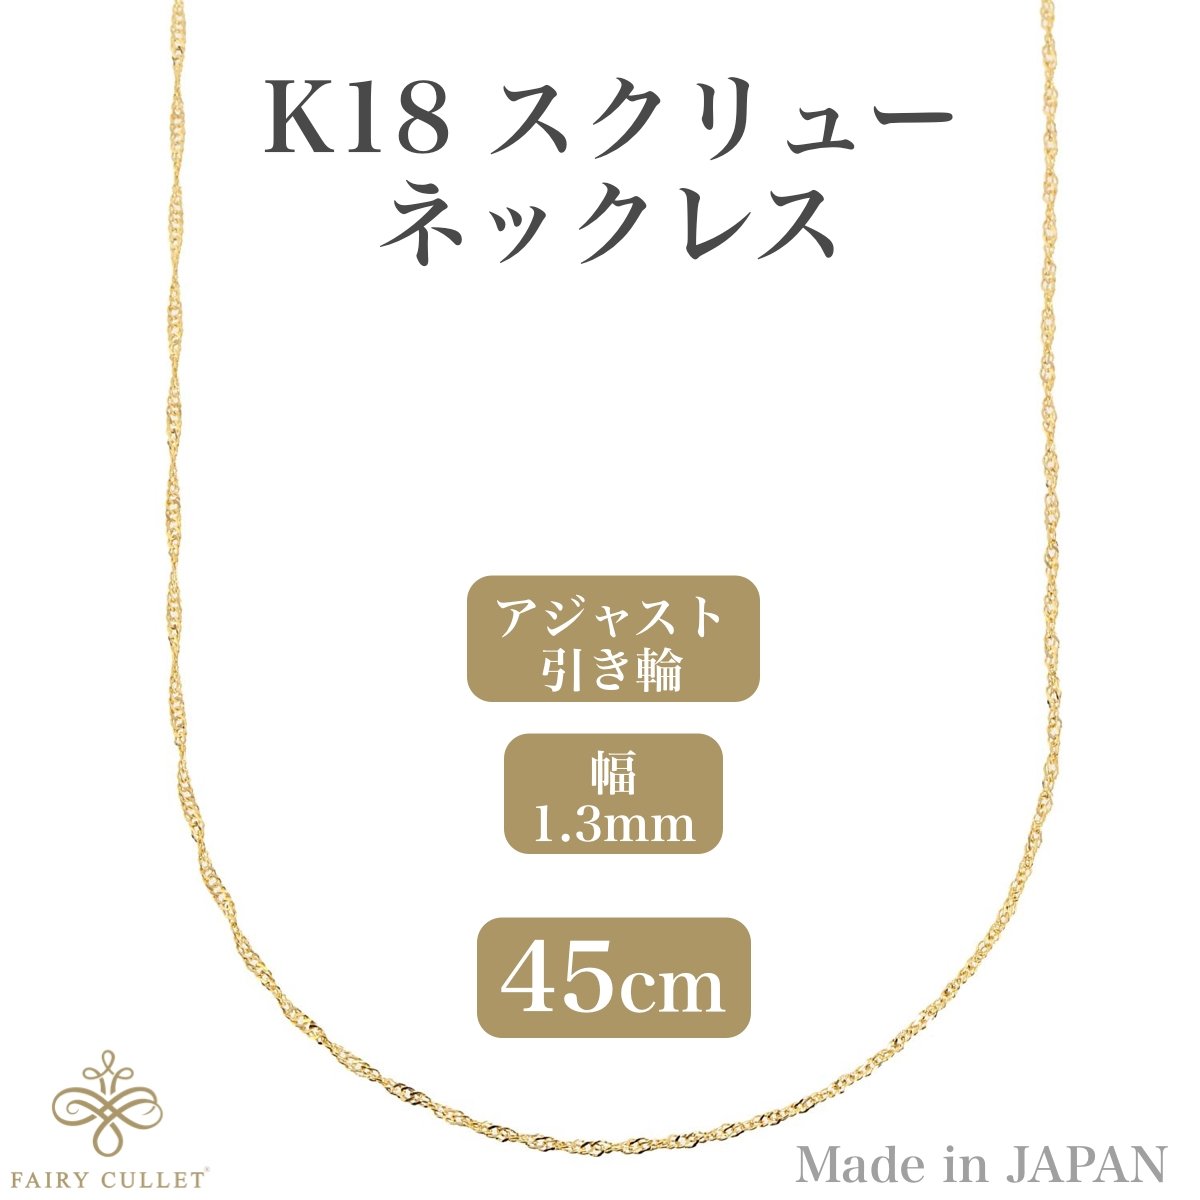 18金ネックレス K18 スクリューチェーン 45cm (幅1.3mm 約1.16g) - 喜平ジュエリーの専門店 FAIRY CULLET(フェアリーカレット)